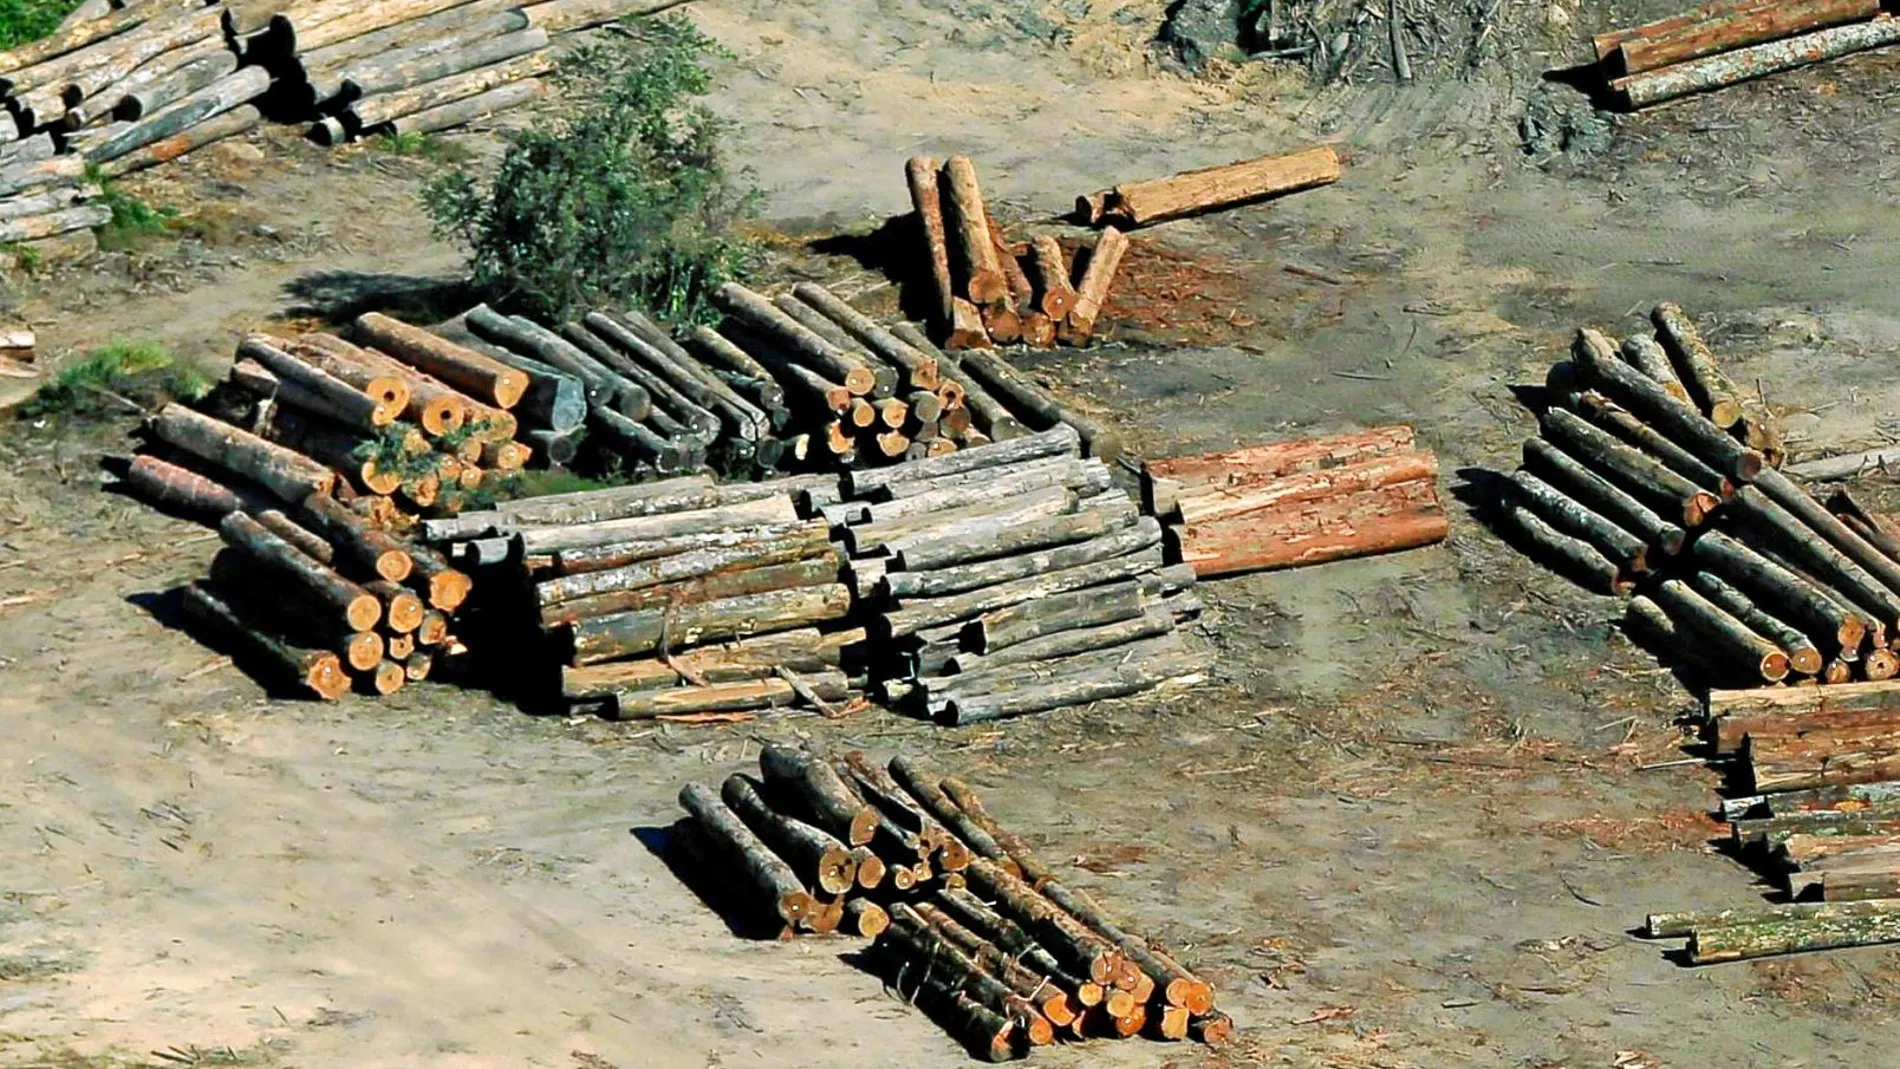 La tala ilegal de los bosques es otro grave problema que afronta desde hace décadas el Amazonas